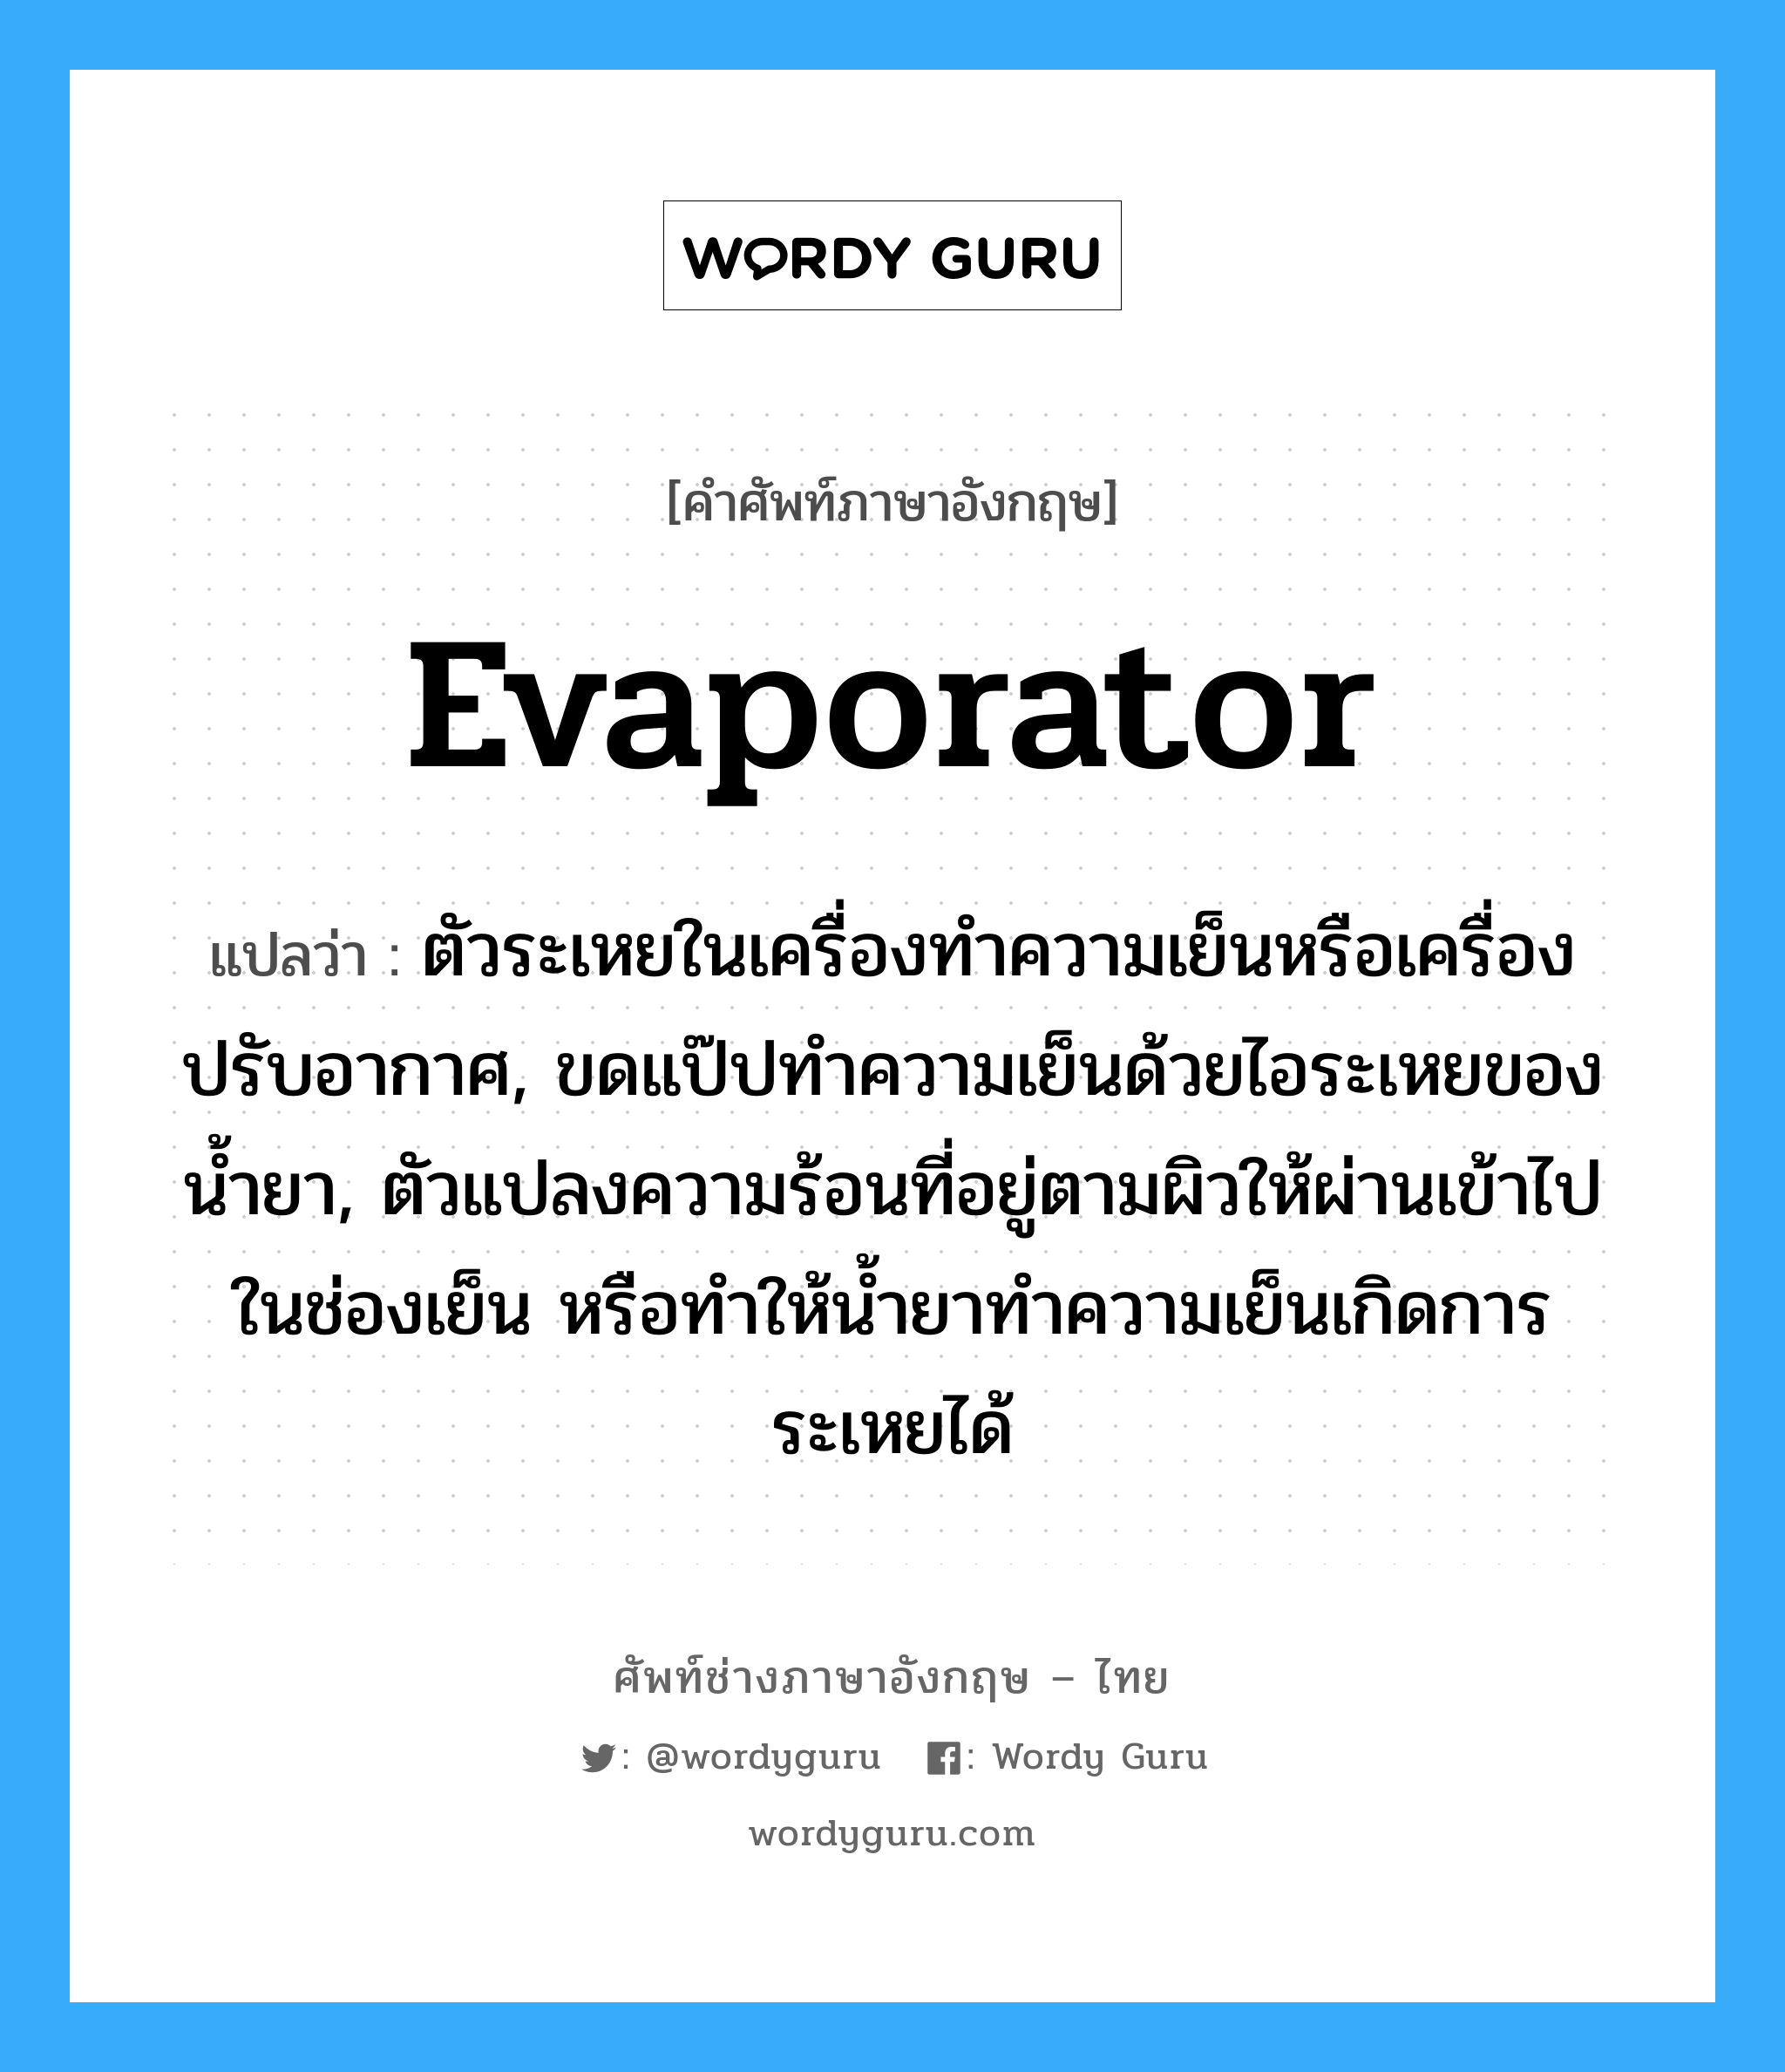 evaporator แปลว่า?, คำศัพท์ช่างภาษาอังกฤษ - ไทย evaporator คำศัพท์ภาษาอังกฤษ evaporator แปลว่า ตัวระเหยในเครื่องทำความเย็นหรือเครื่องปรับอากาศ, ขดแป๊ปทำความเย็นด้วยไอระเหยของน้ำยา, ตัวแปลงความร้อนที่อยู่ตามผิวให้ผ่านเข้าไปในช่องเย็น หรือทำให้น้ำยาทำความเย็นเกิดการระเหยได้